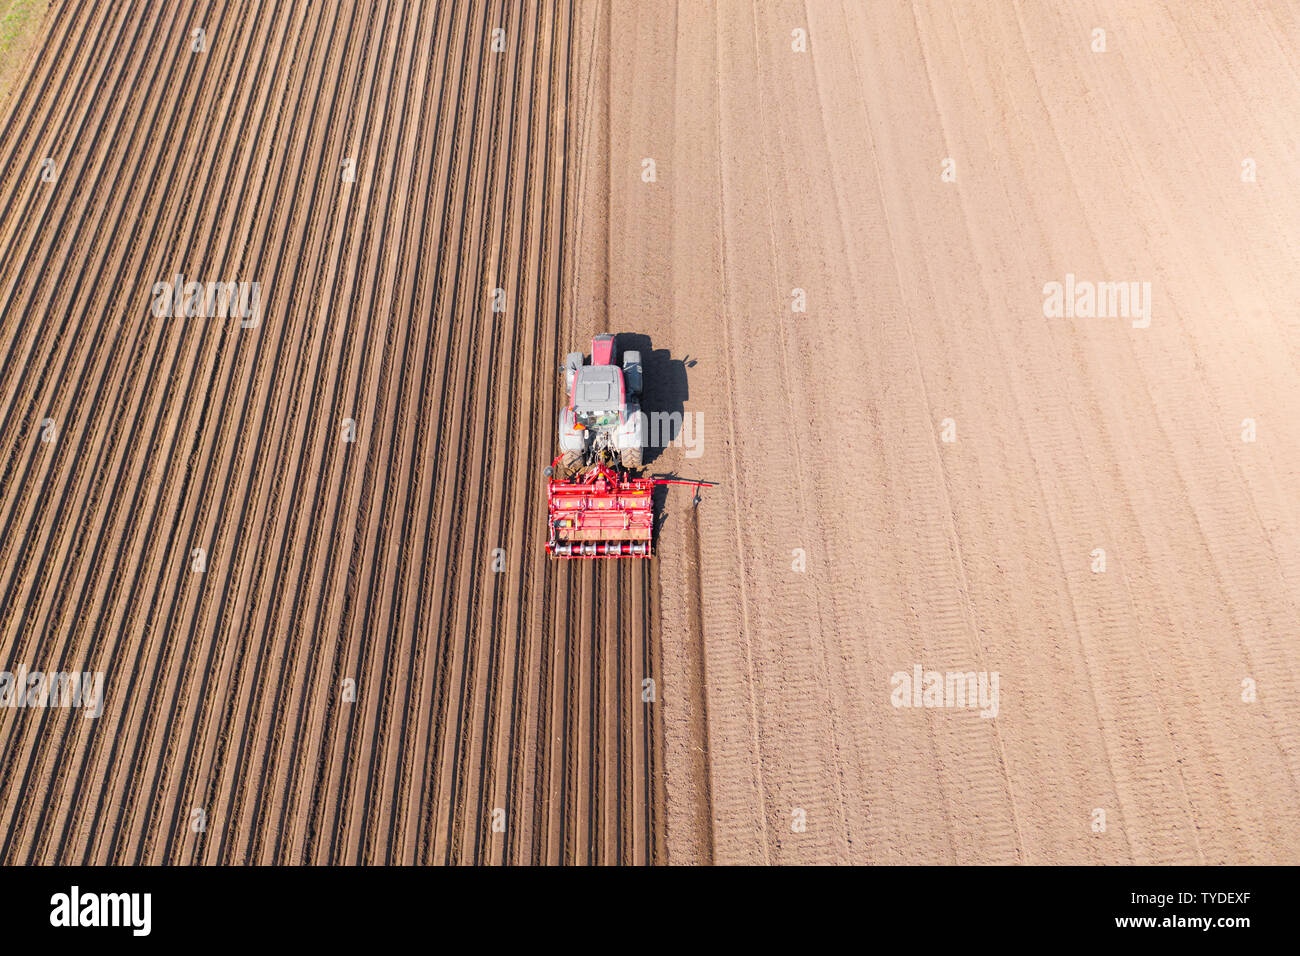 Trattore con gli erpici a dischi su terreni agricoli, vista dall'alto. Il trattore taglia di solchi di un campo arato. Preparare il campo per la semina di verdure. Il lavoro agricolo con un trattore. Foto Stock